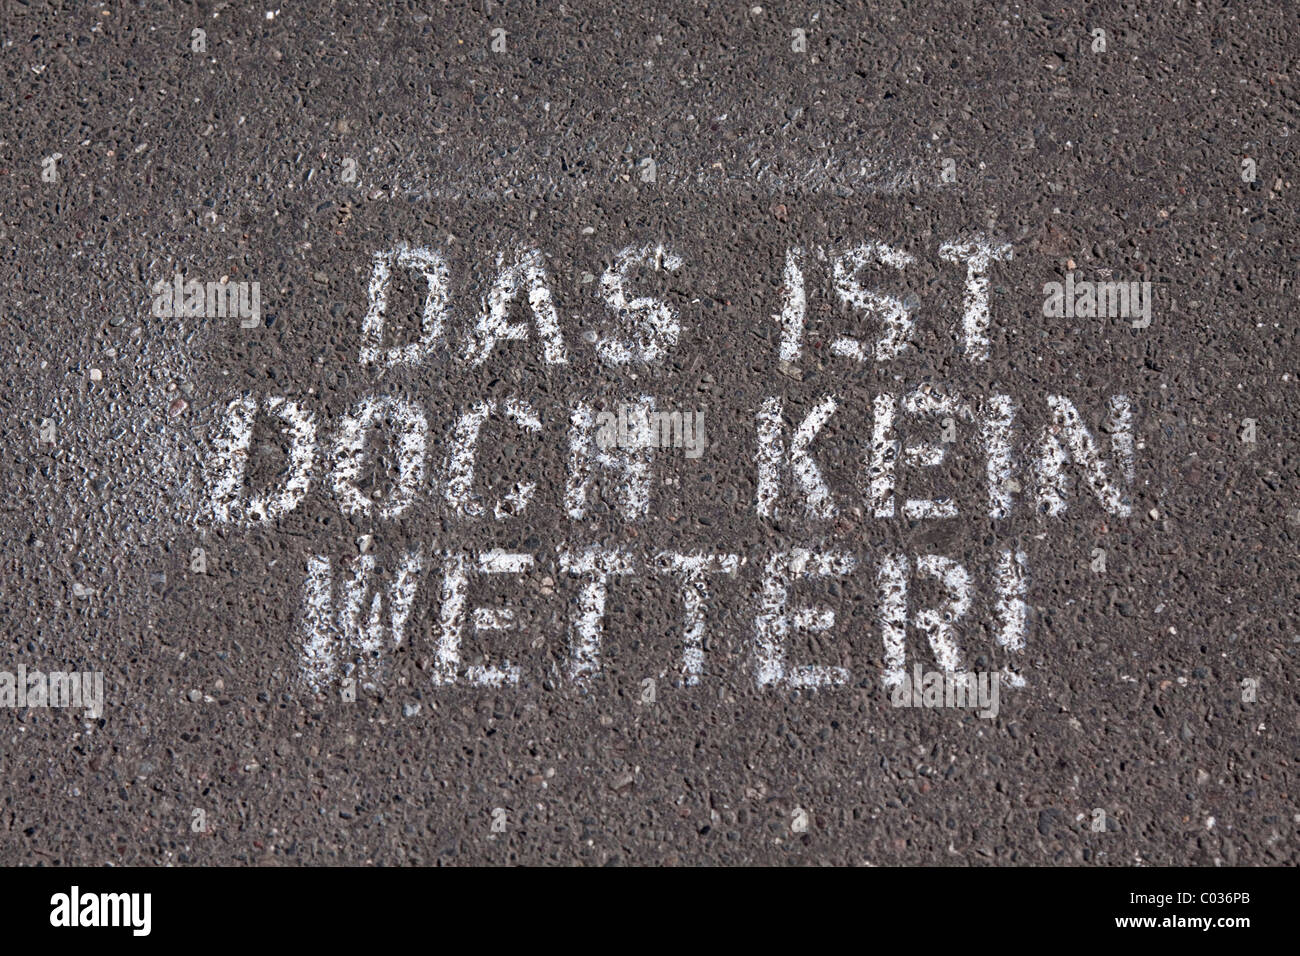 Schriftzug auf einem Bürgersteig, Das ist Doch Kein Wetter gespritzt!, Deutsch, denn das ist nicht das Wetter! Stockfoto